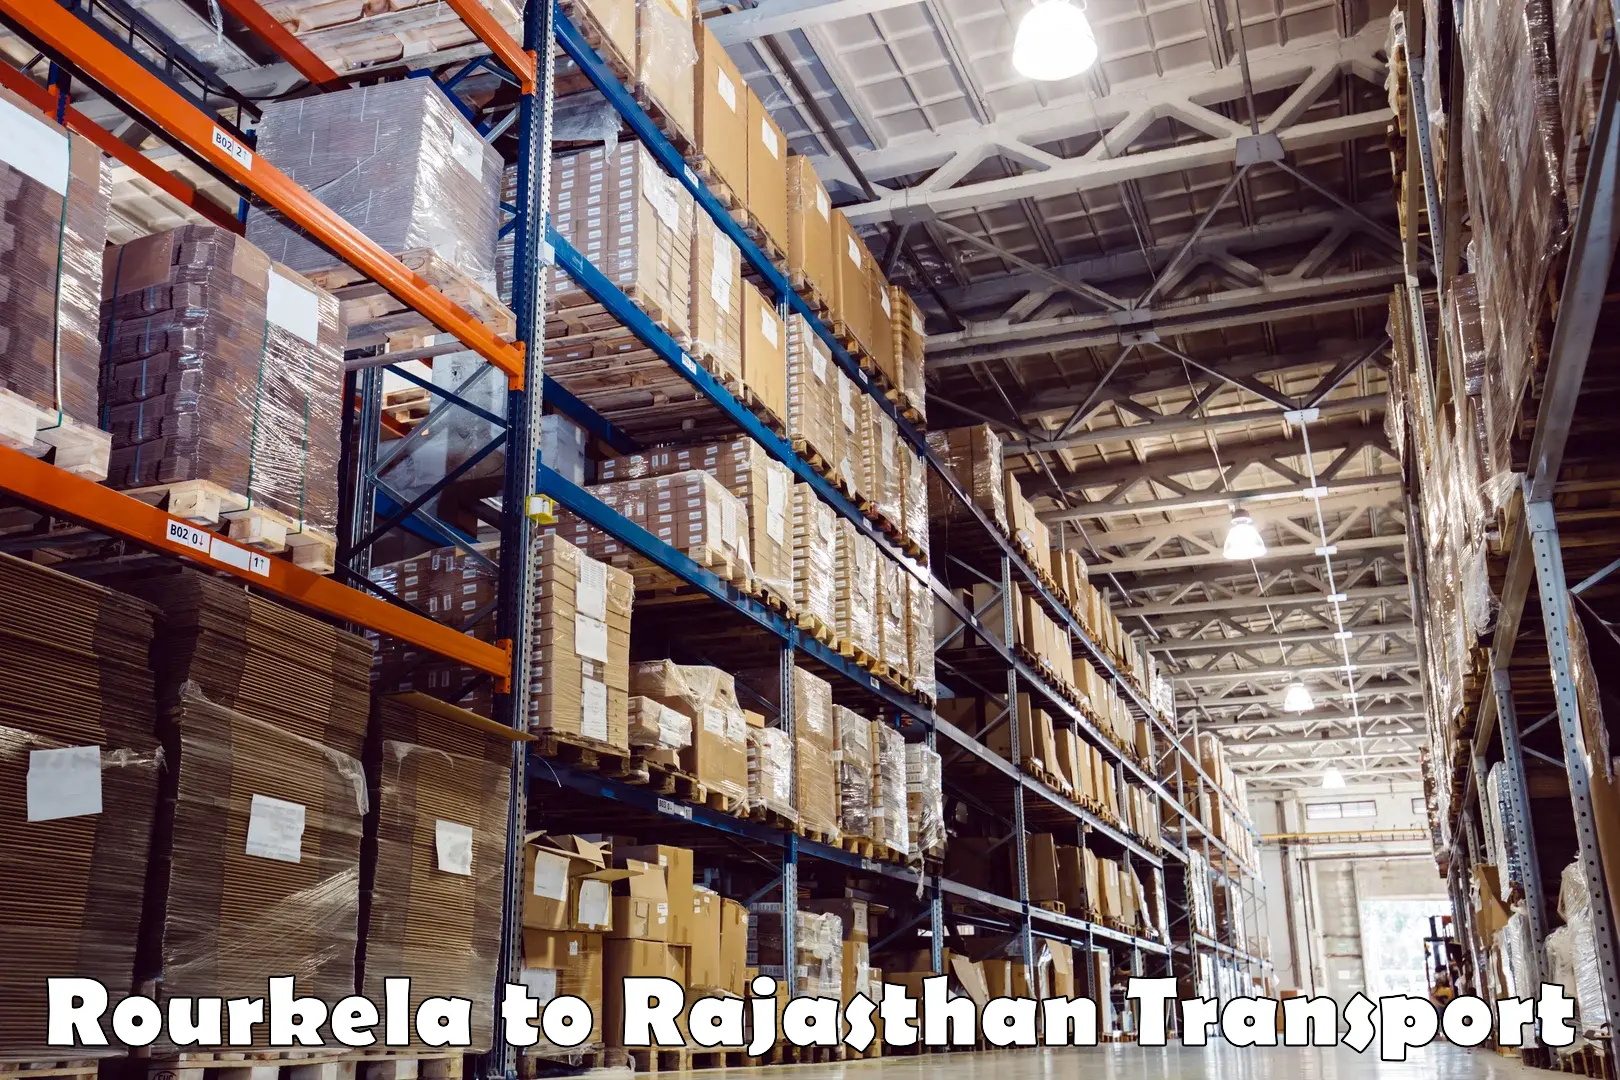 Shipping partner Rourkela to Rajasthan